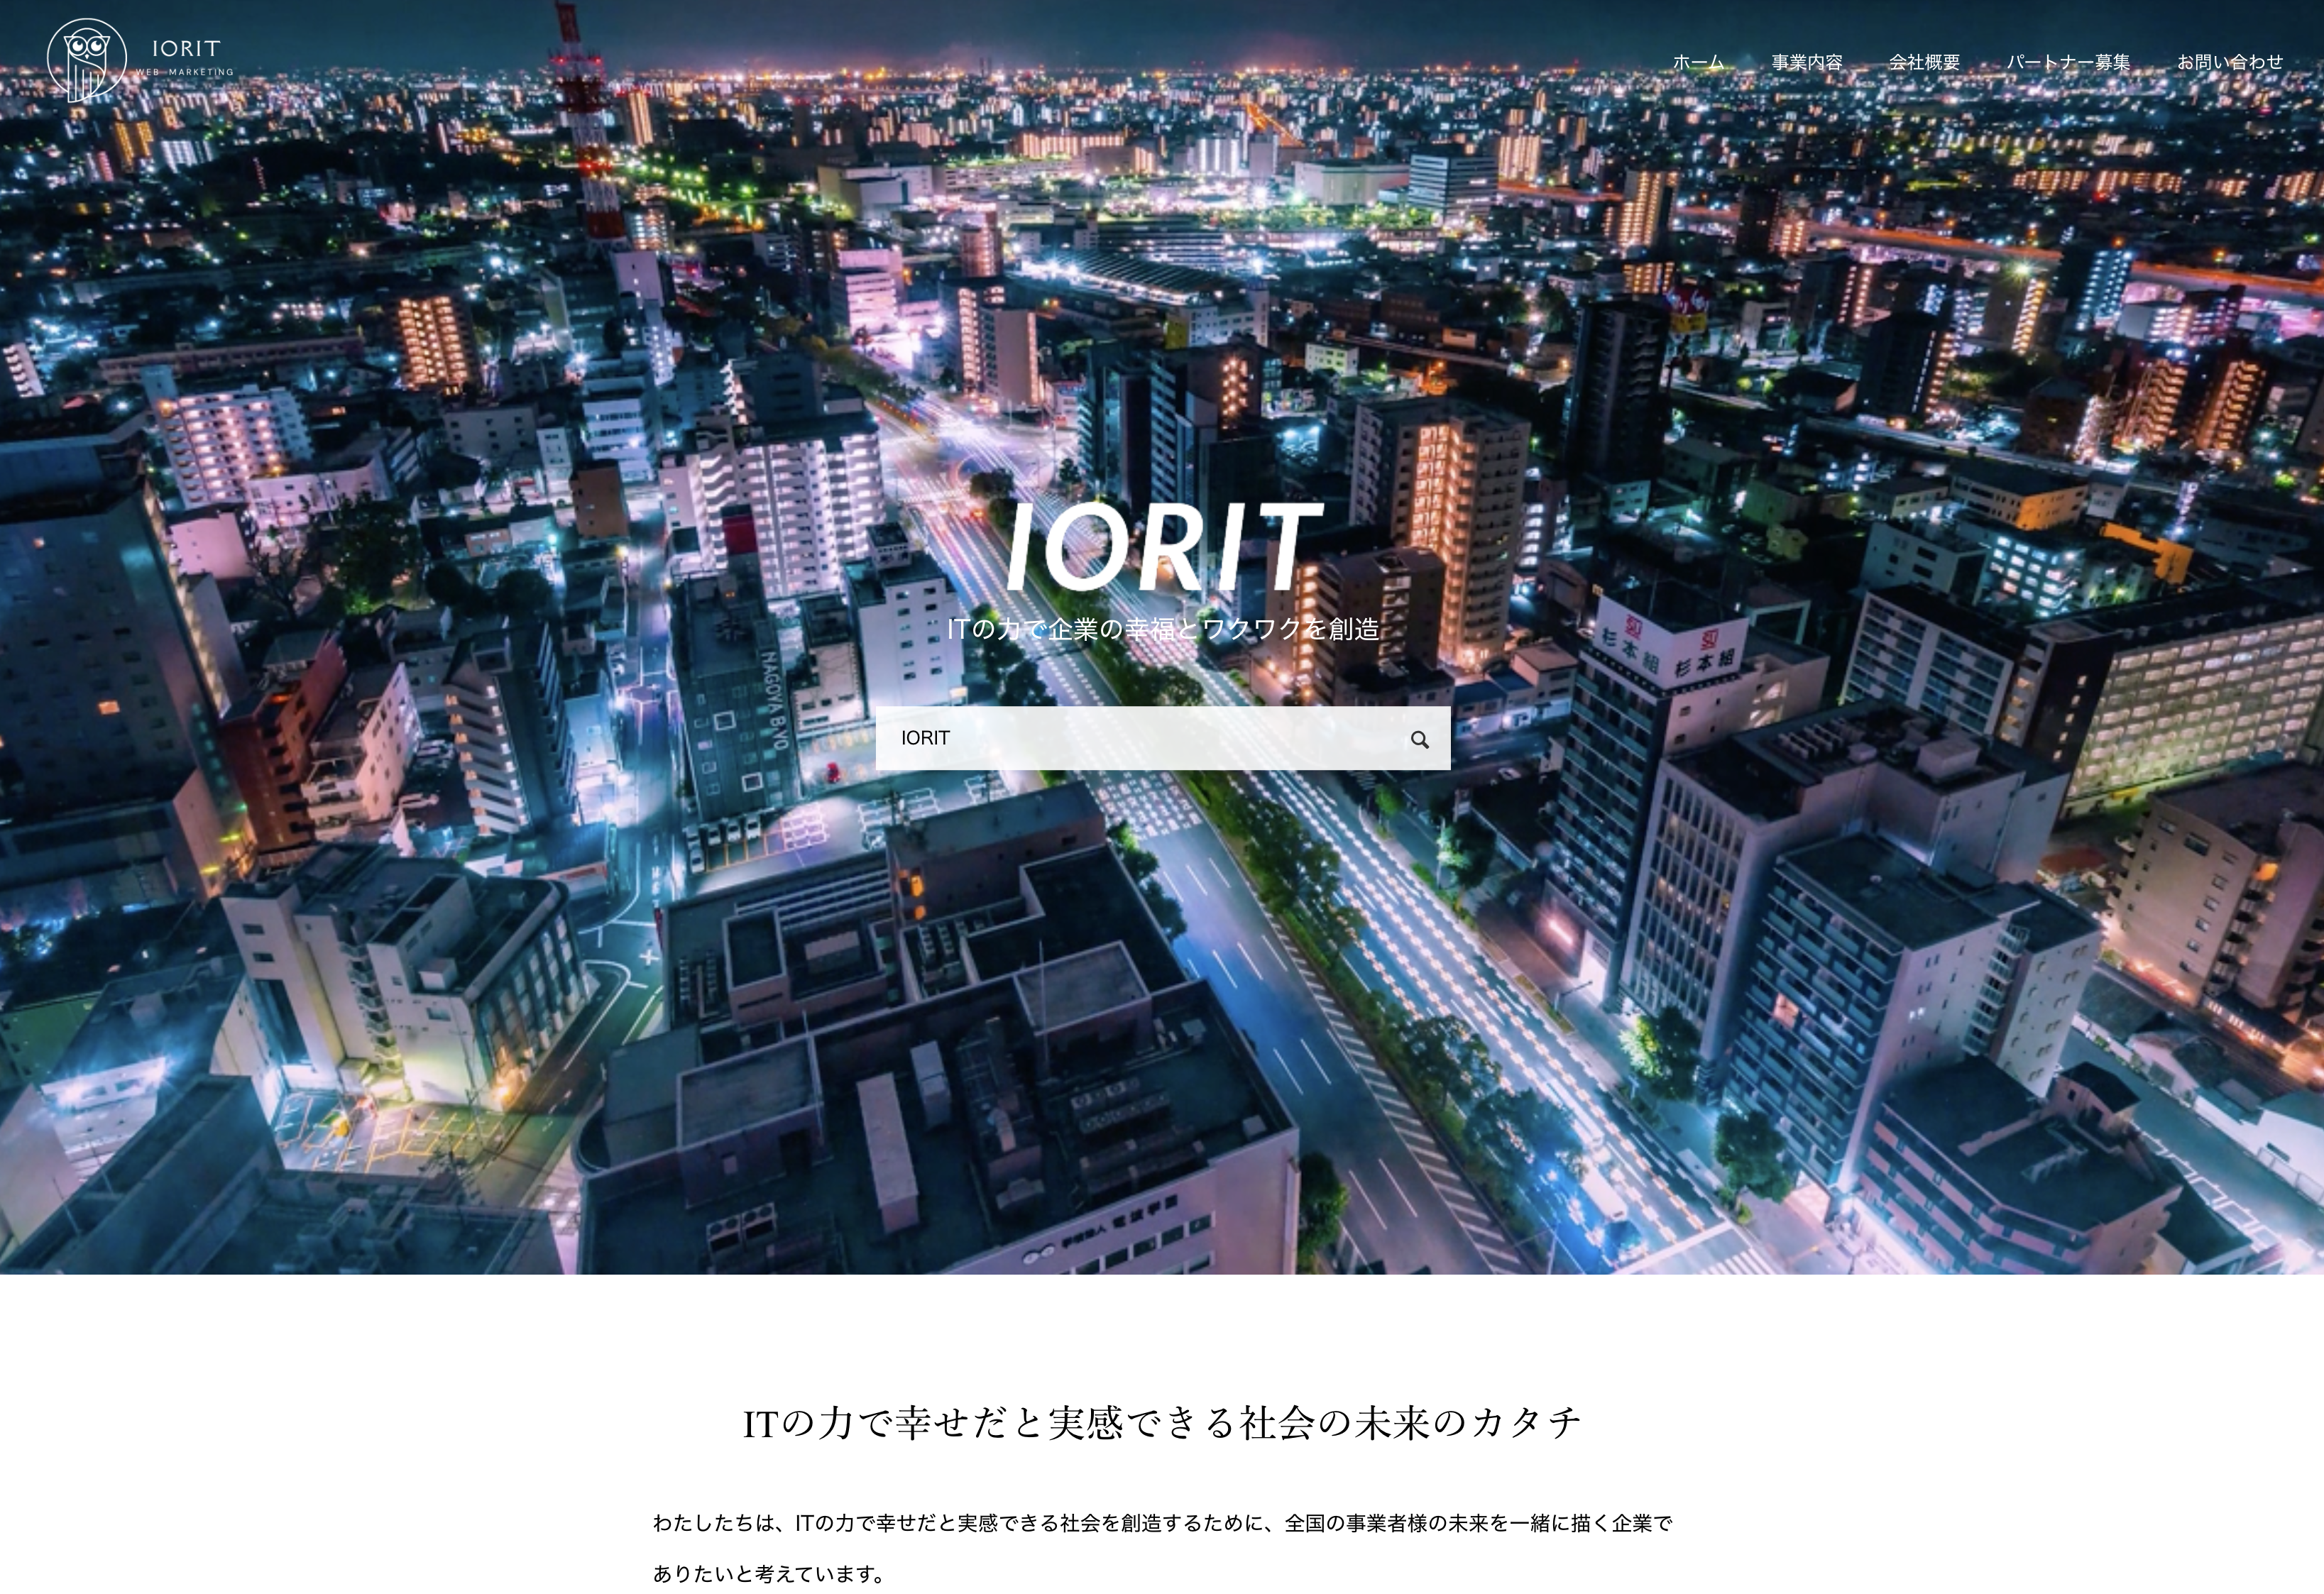 株式会社IORITの株式会社IORIT:店舗販促・サンプリングサービス